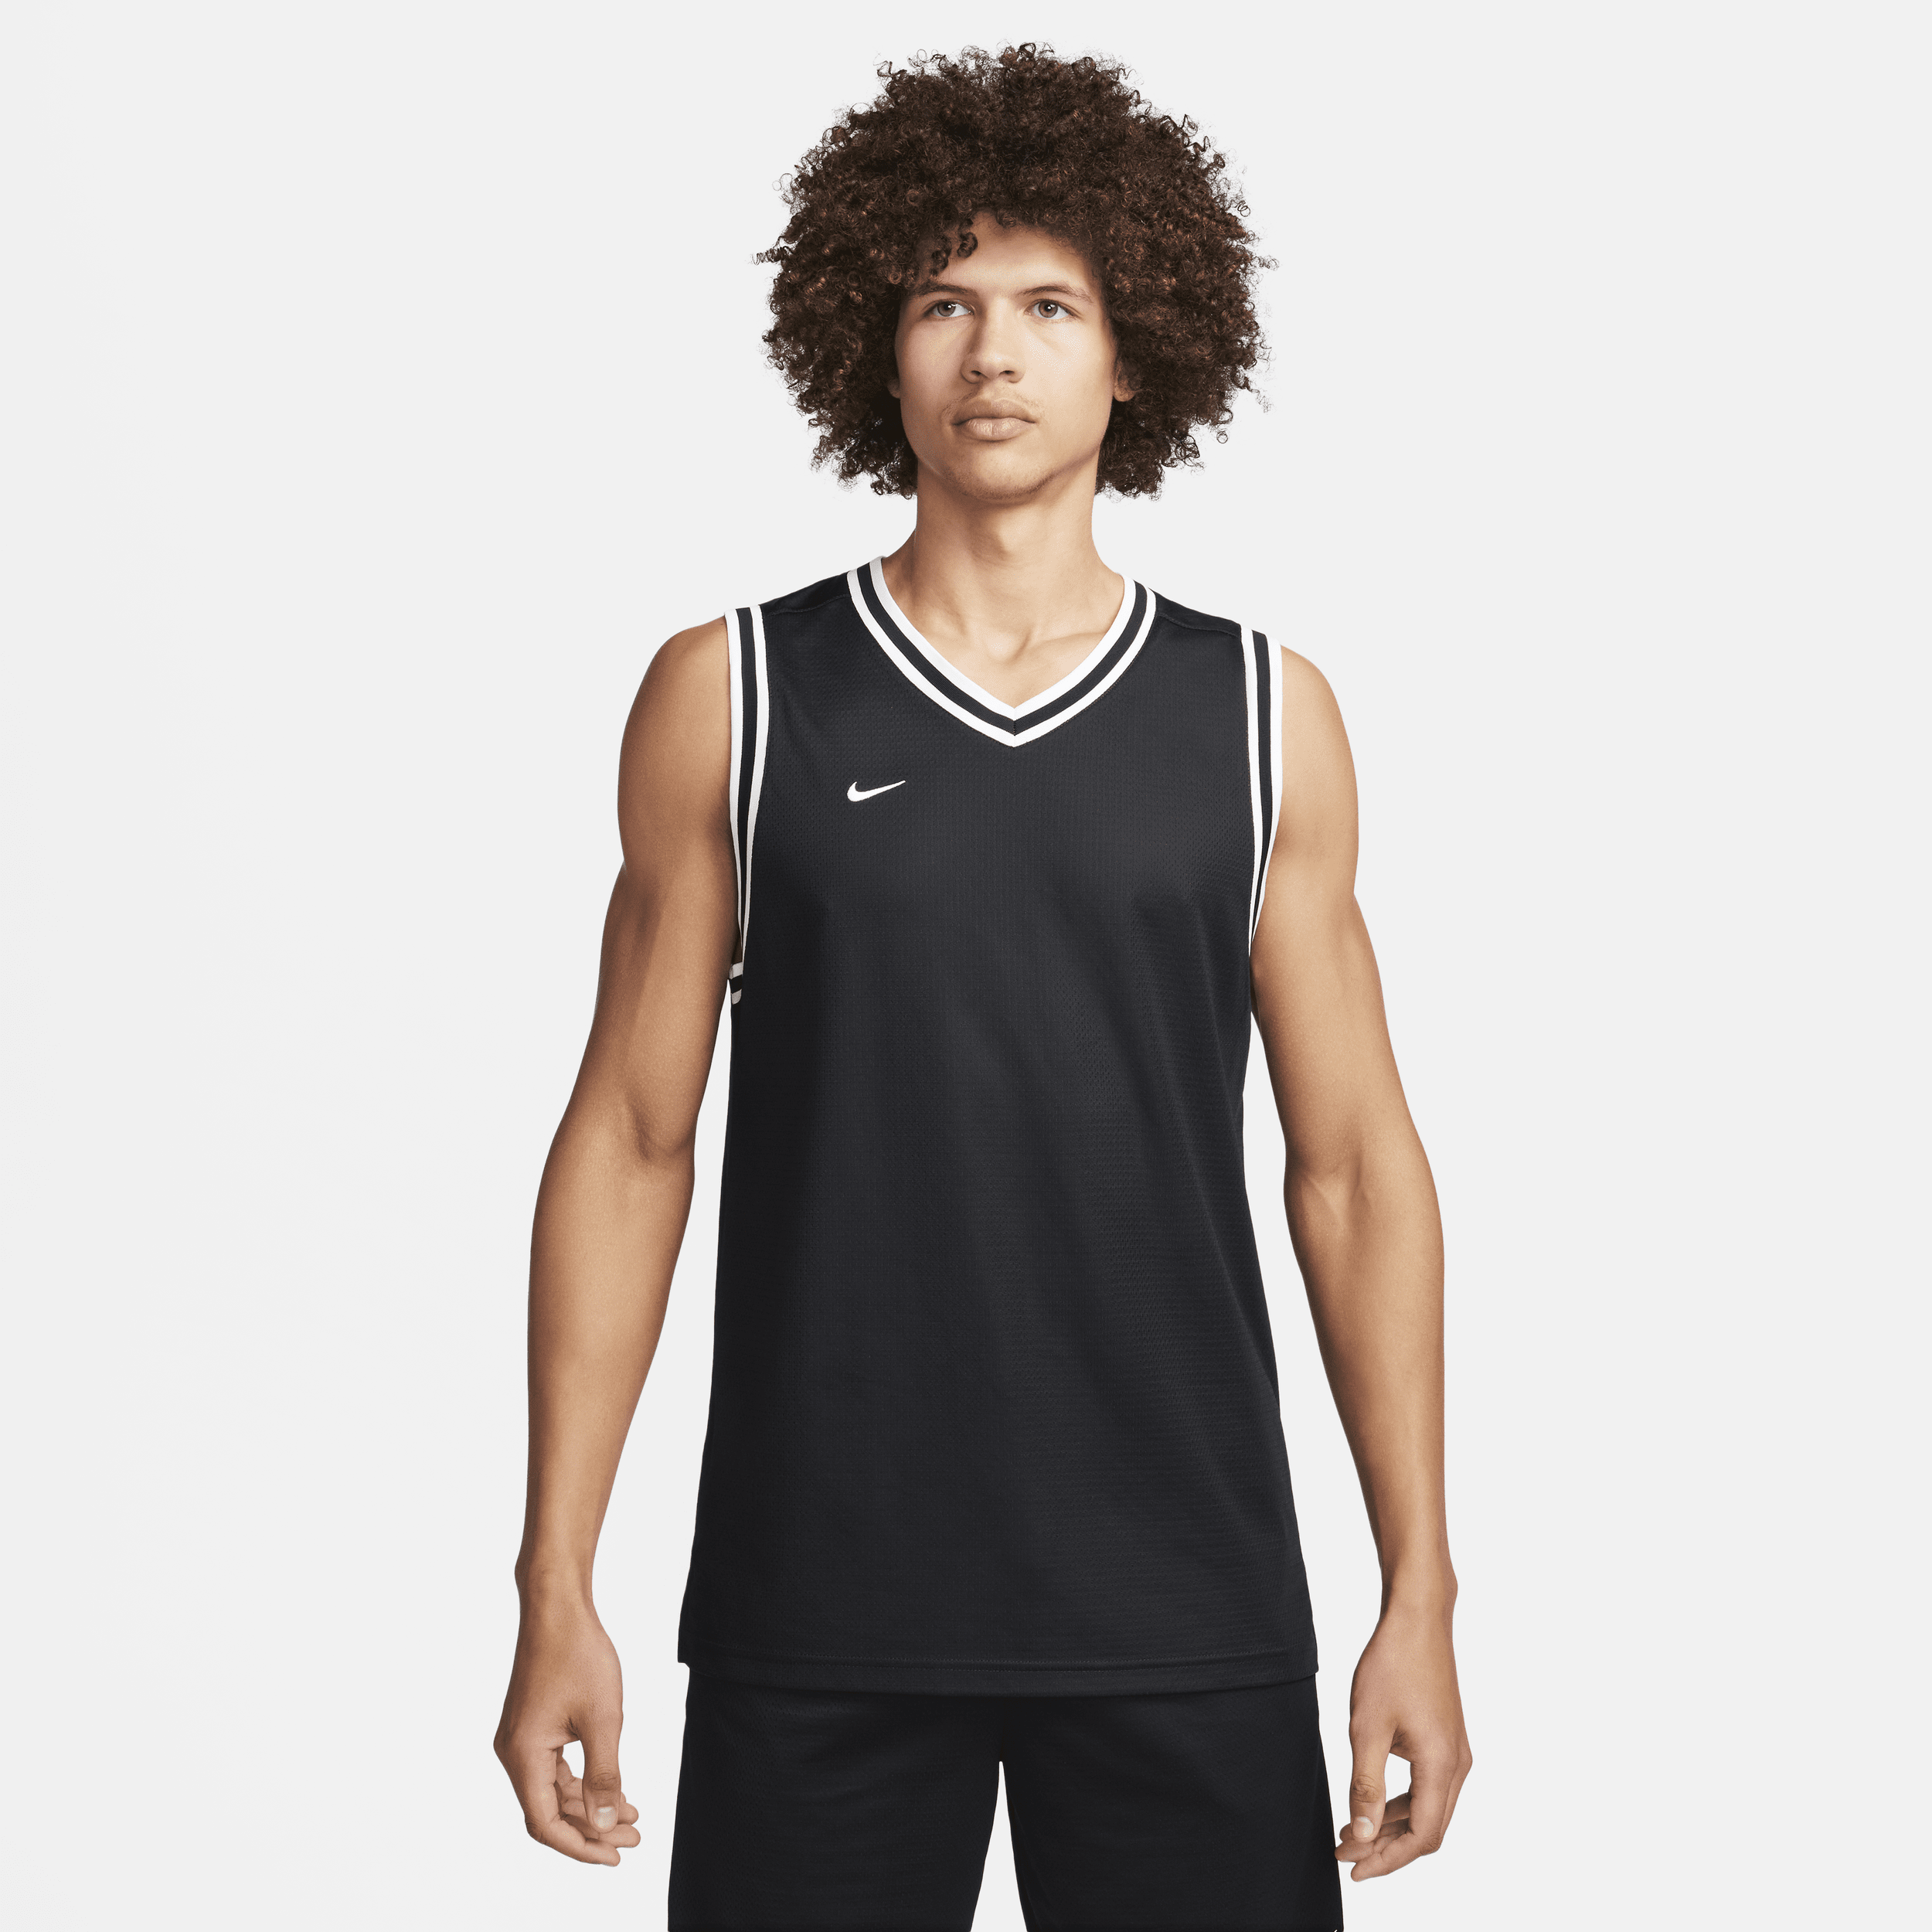 Nike DNA Dri-FIT basketbaljersey voor heren - Zwart